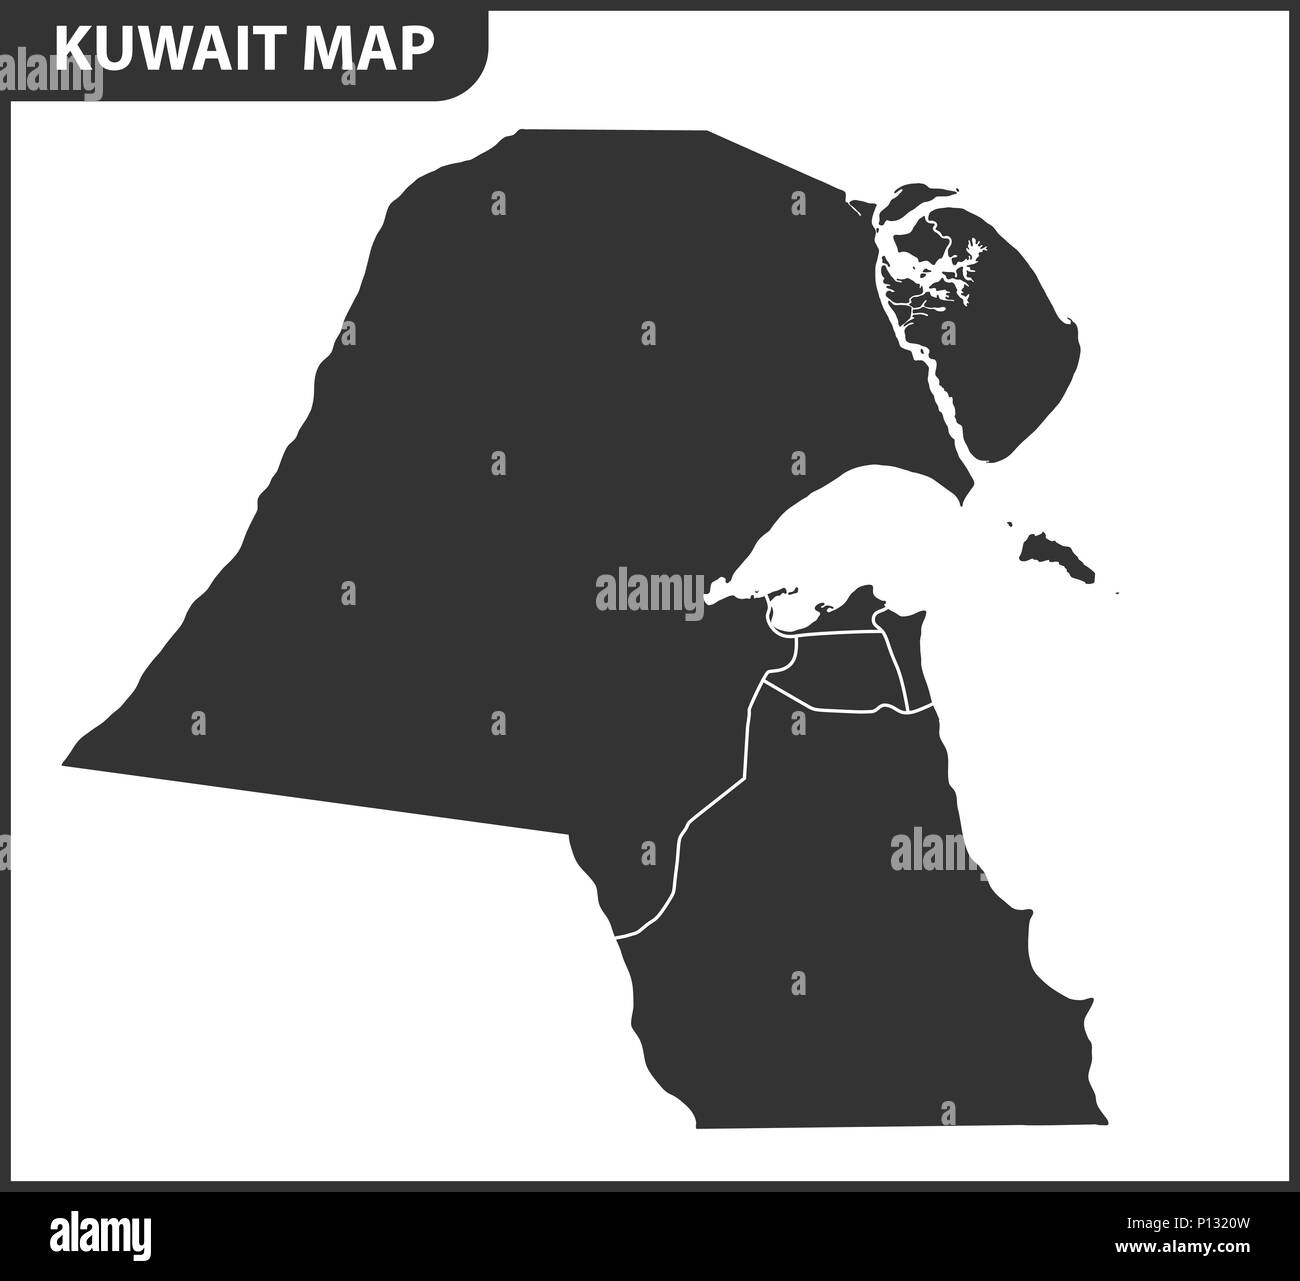 La carte détaillée du Koweït avec les régions ou états. Division administrative. Illustration de Vecteur